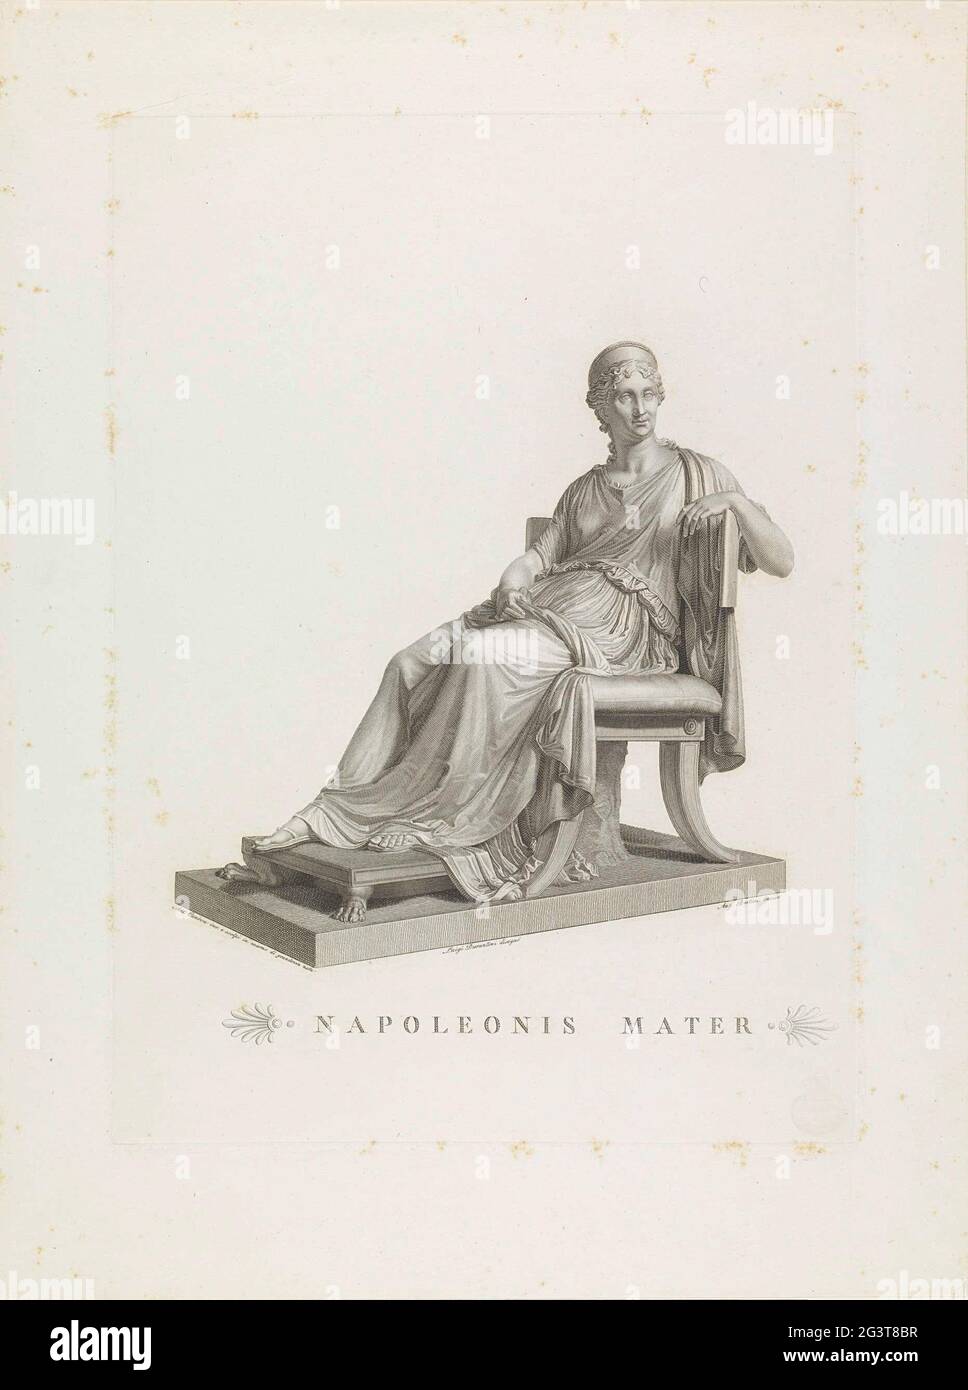 Statue der Napoleonischen Mutter; Napoleonist Mater. Statue von Maria  Laetitia Ramolino, der Mutter von Napoleon Bonaparte, die auf einem Stuhl  sitzt, vom italienischen Bildhauer Antonio Canova Stockfotografie - Alamy